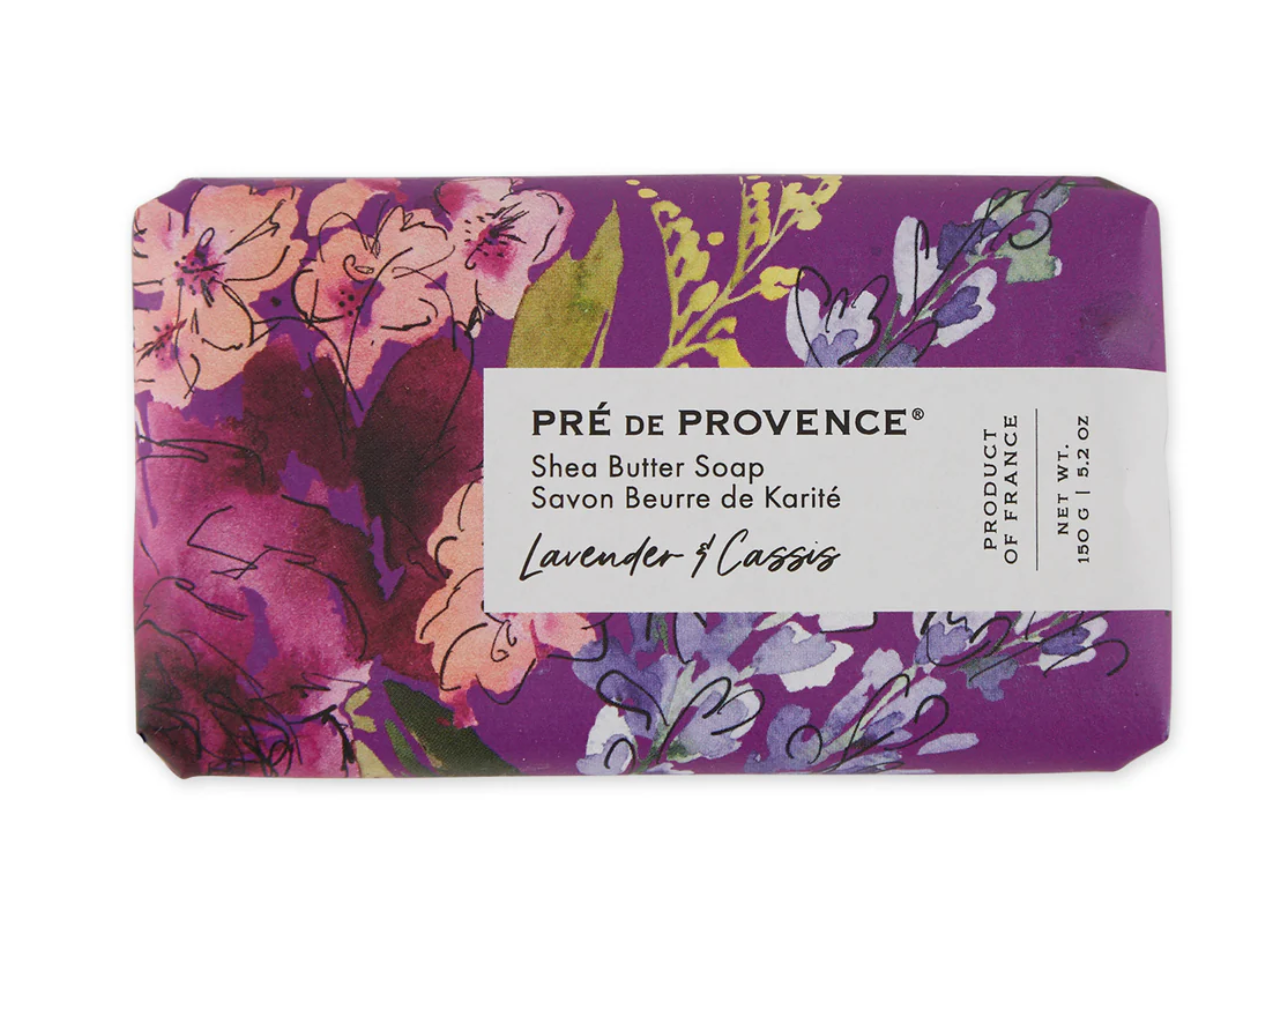 Lavender & Cassis soap bar by Pré de Provence